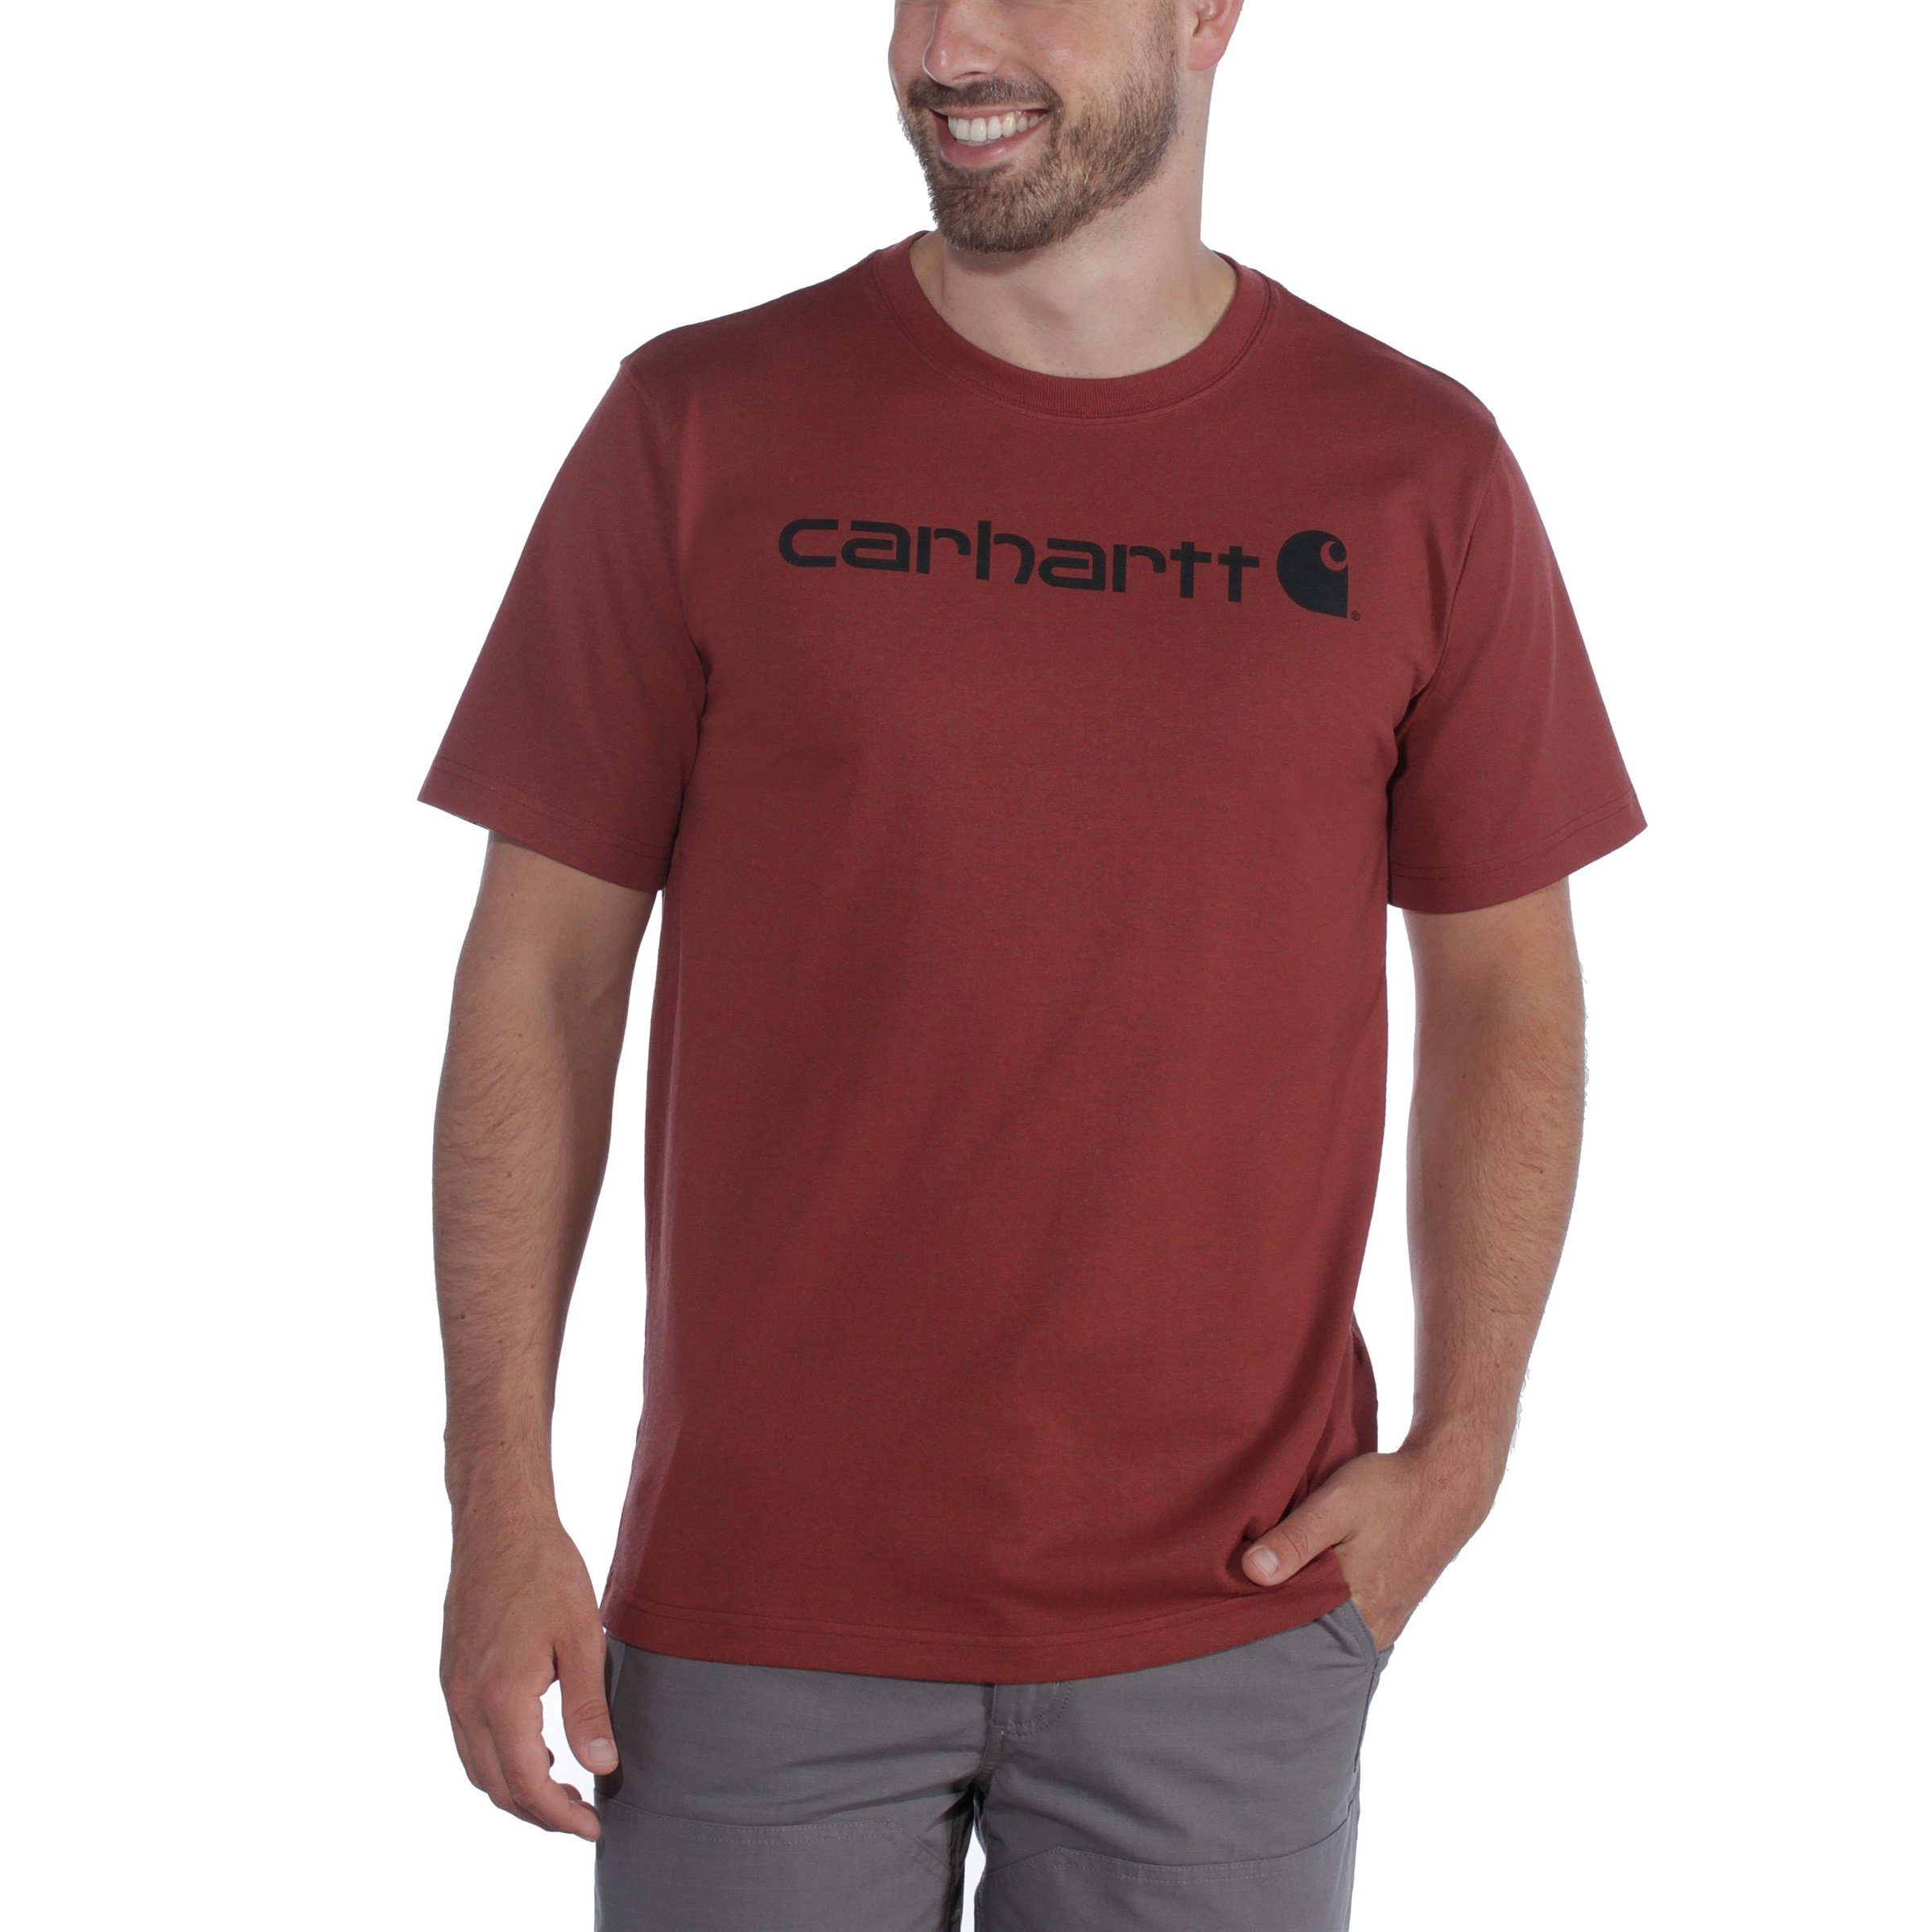 Carhartt T-Shirt Herren Logo T-Shirt Fit Adult Heavyweight Short-Sleeve Graphic navy Relaxed Carhartt